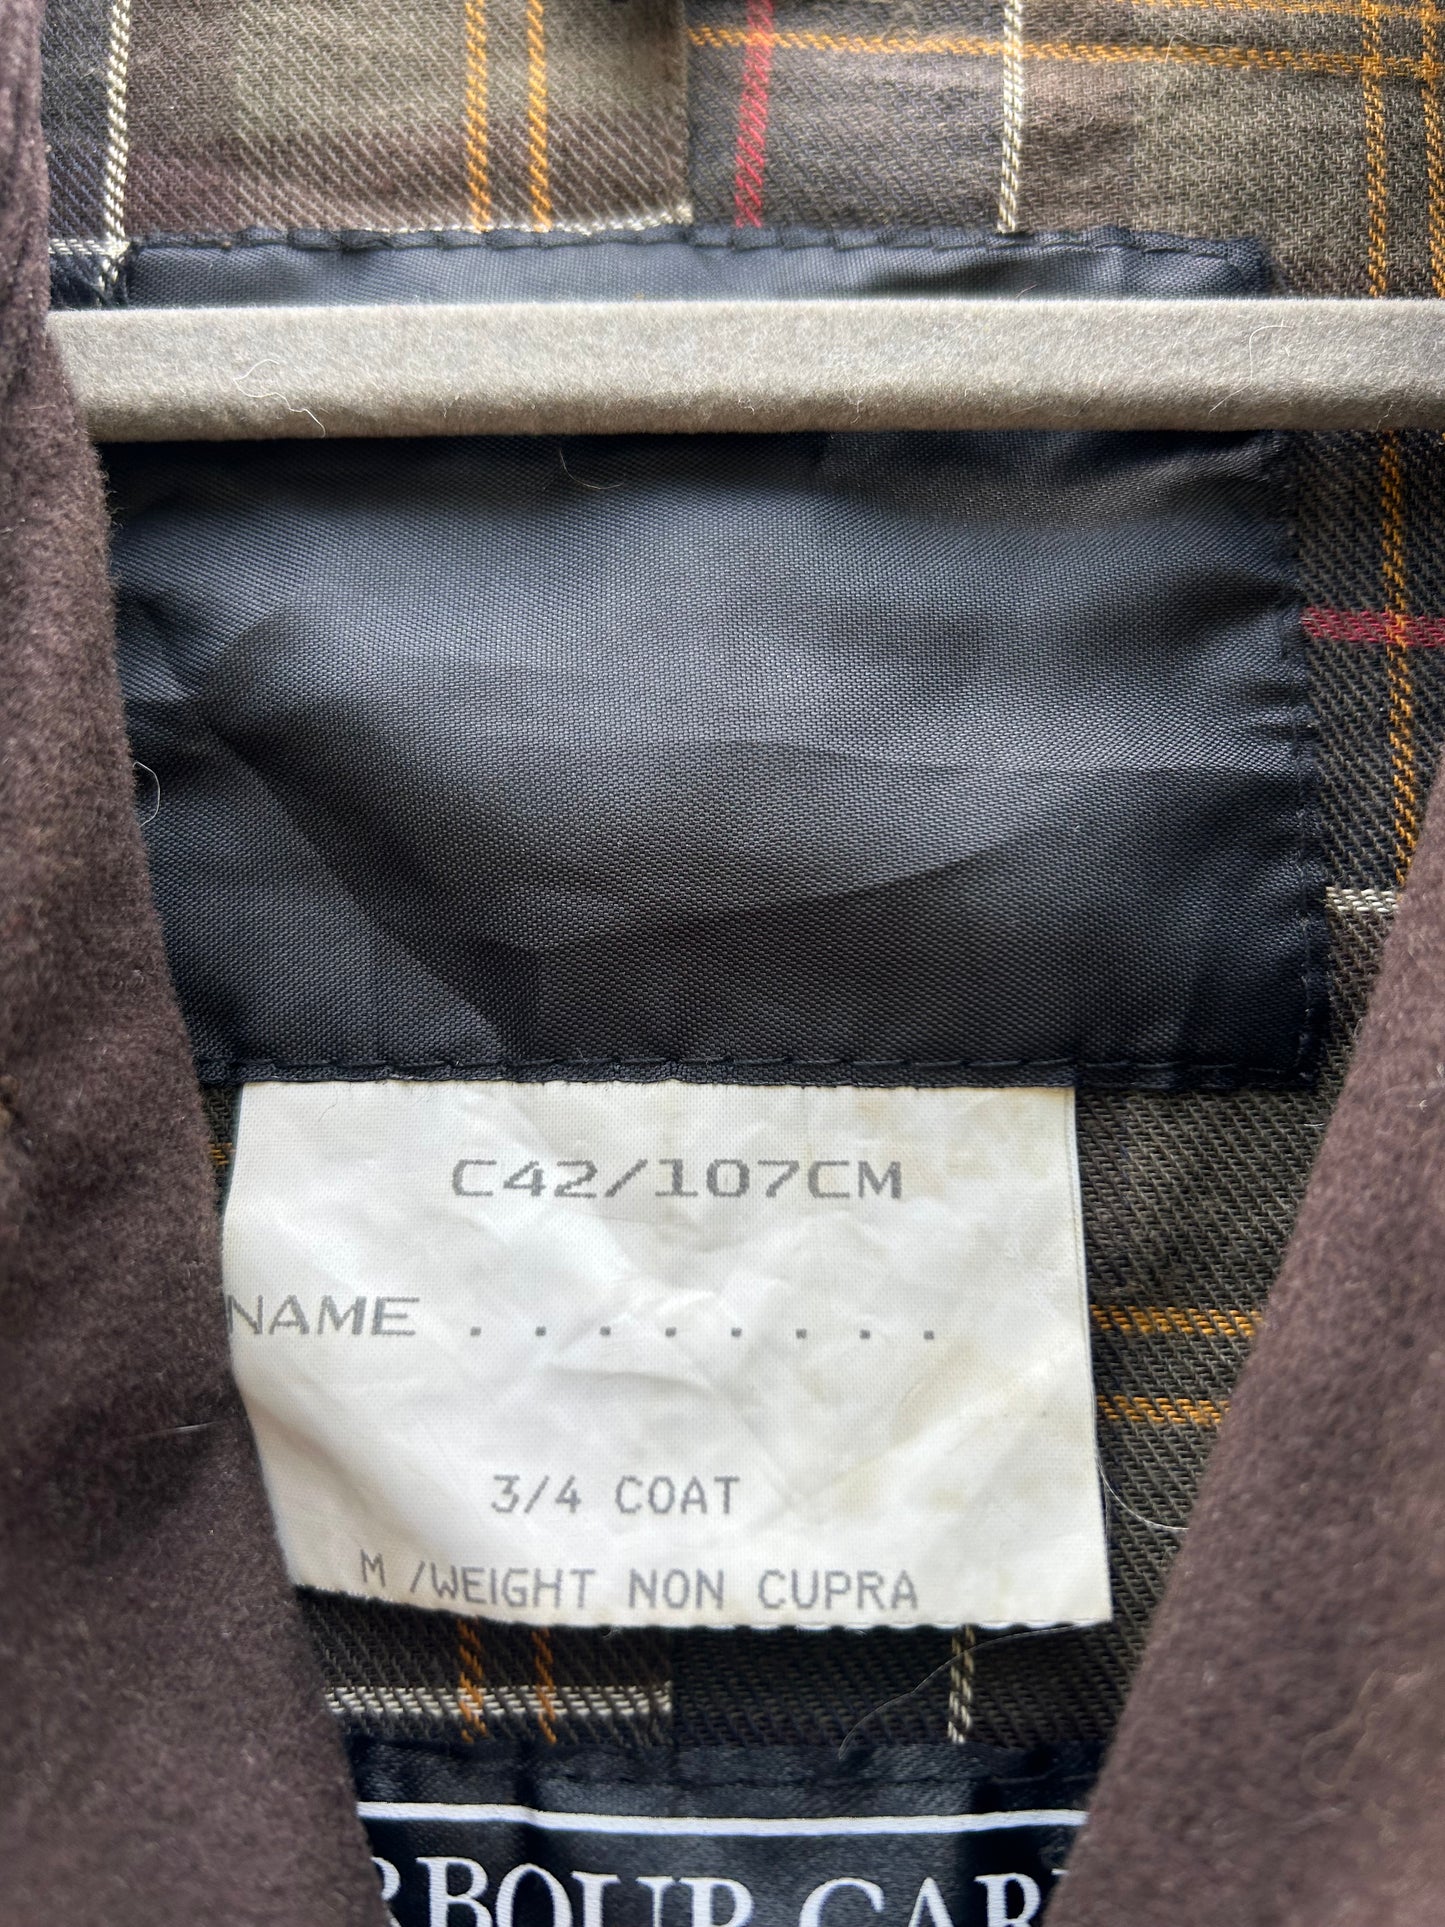 Barbour Trench Uomo Vintage cerato Original 3/4 coat c42/107- Olive Three quarters coat olive Size Large